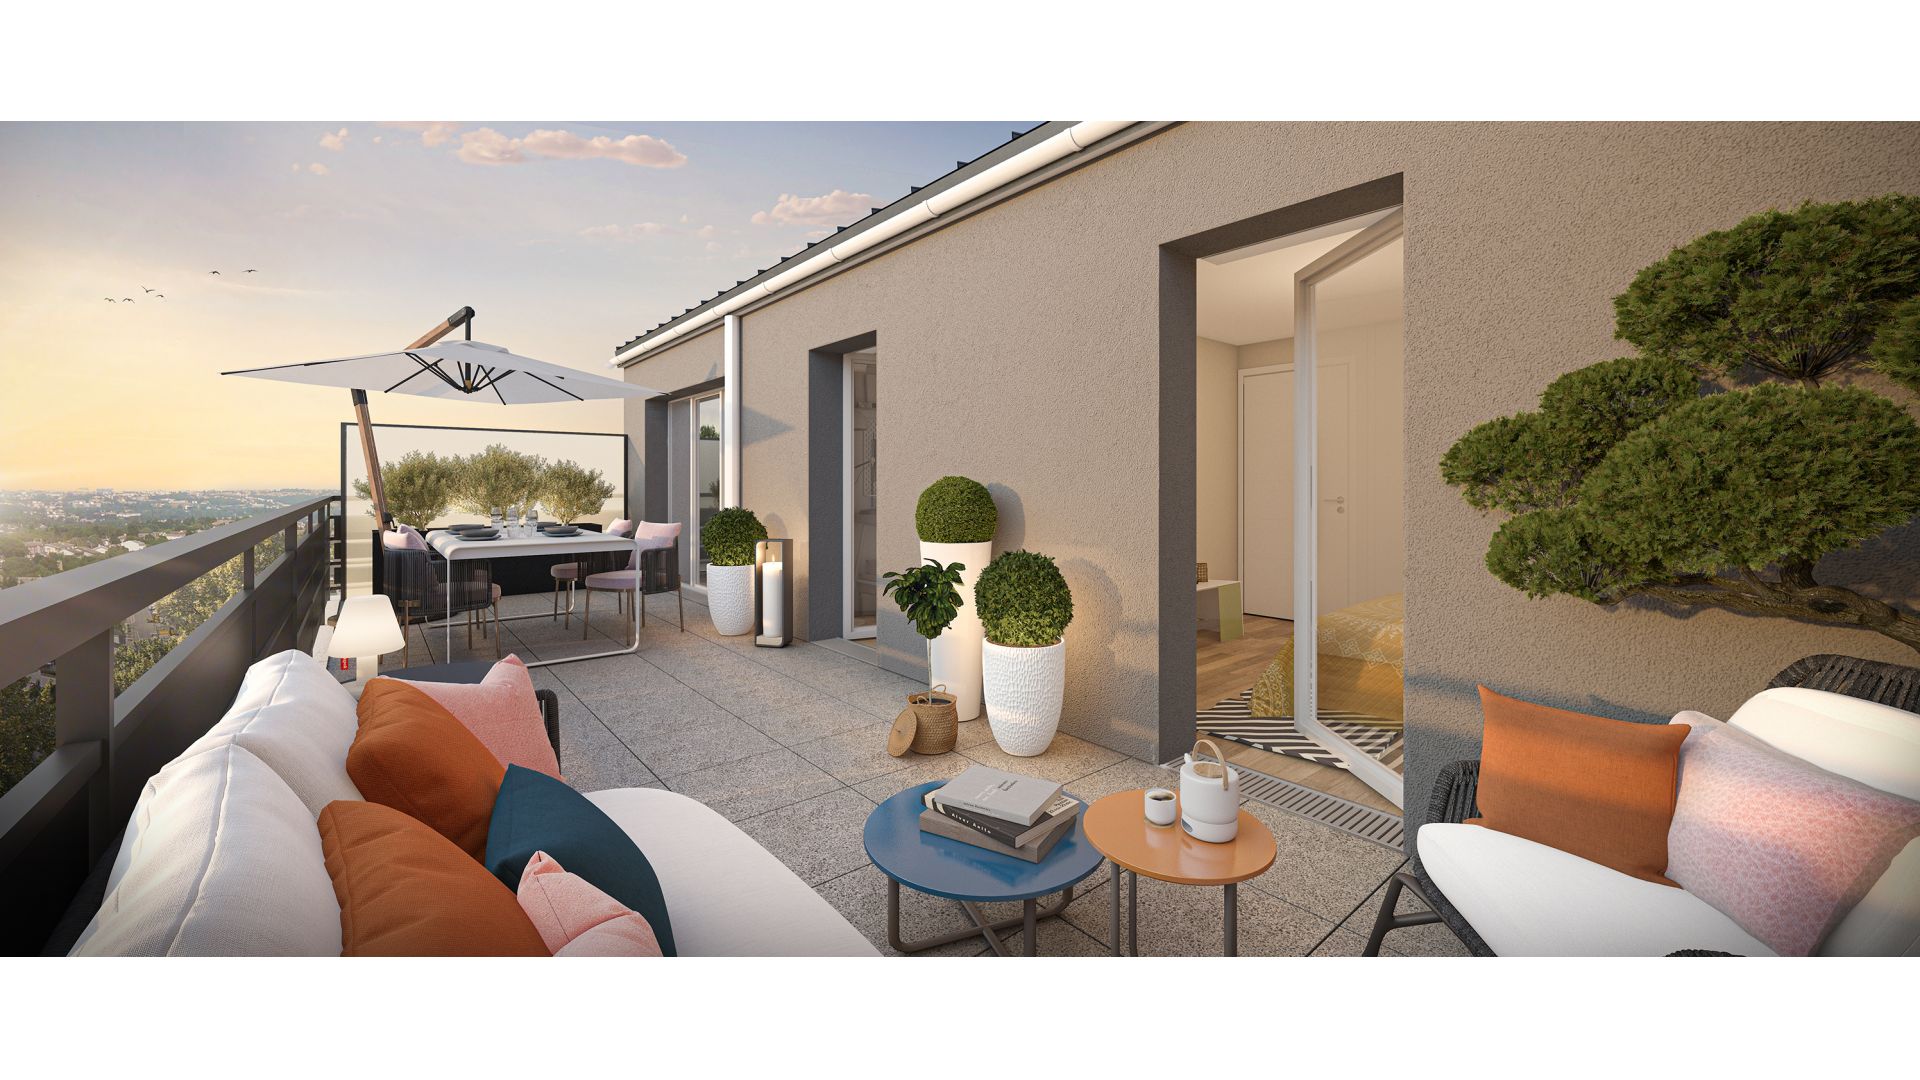 Greencity immobilier - achat appartements neufs du T1Bis  au T3Bis - Villas T5  - Résidence Ondulation - Limay 78520